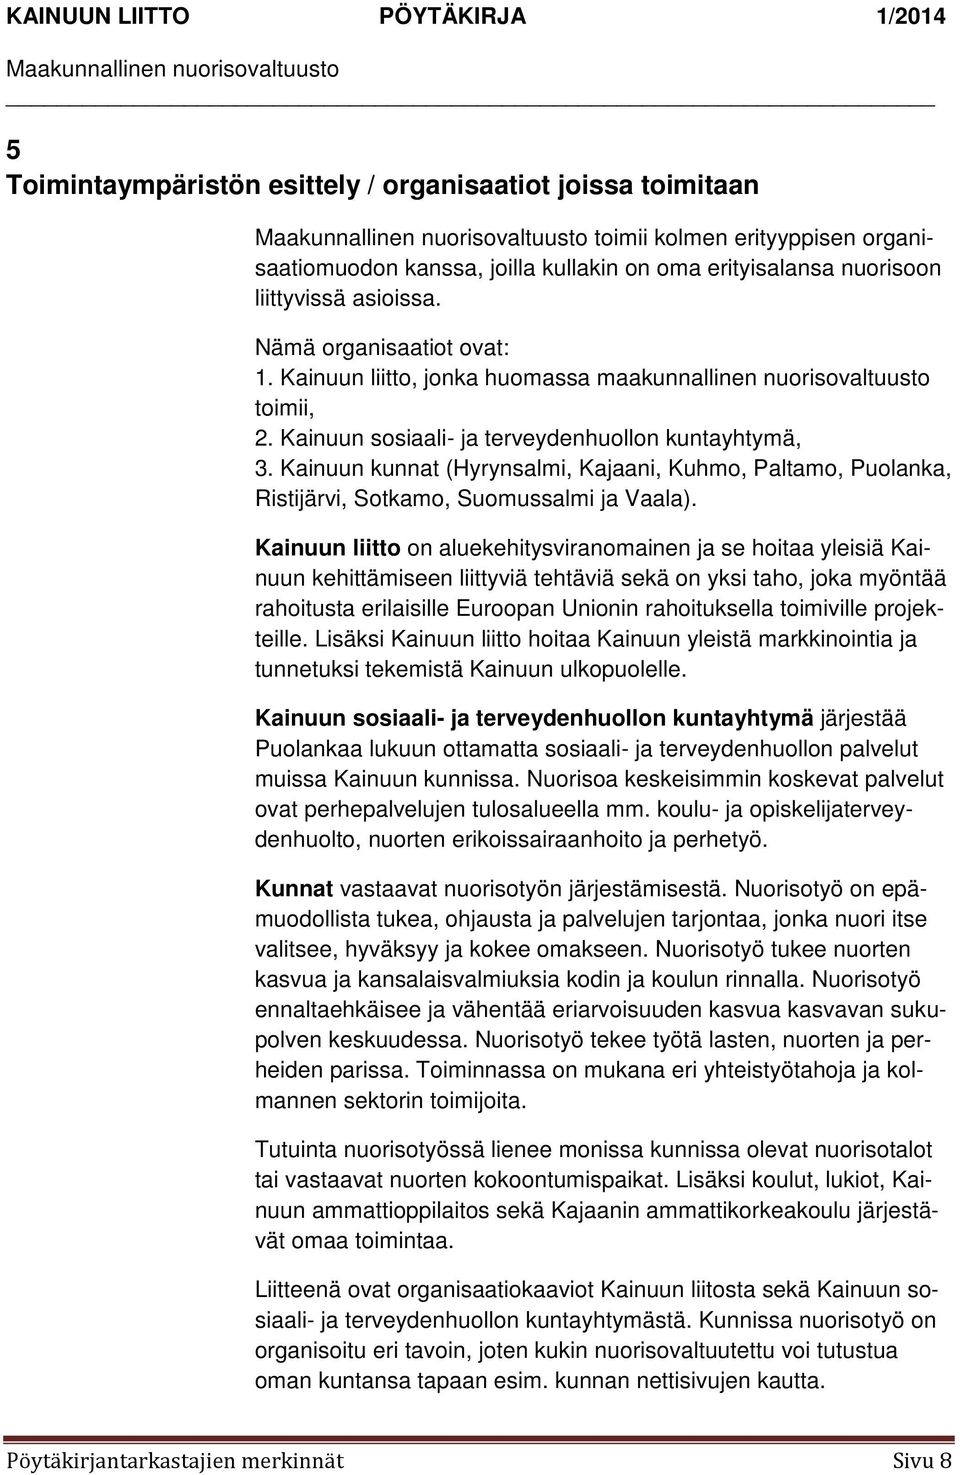 Kainuun kunnat (Hyrynsalmi, Kajaani, Kuhmo, Paltamo, Puolanka, Ristijärvi, Sotkamo, Suomussalmi ja Vaala).